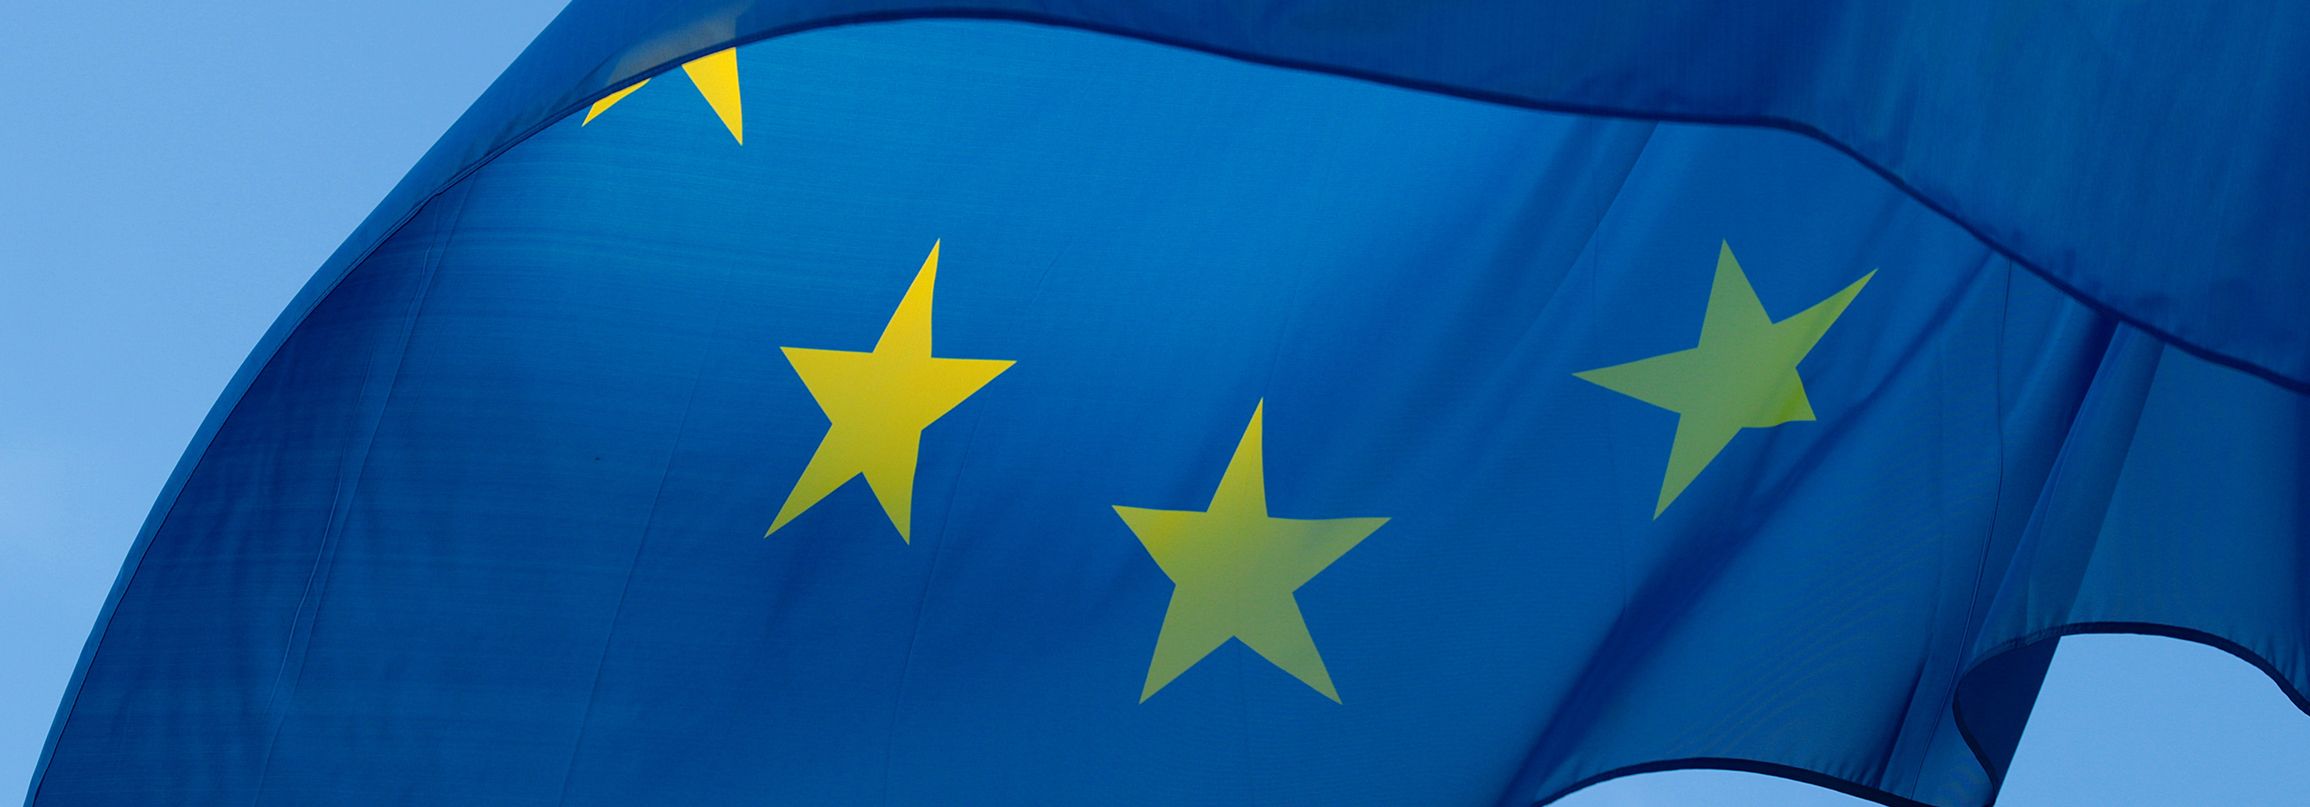 Ausschnitt der europäischen Flagge